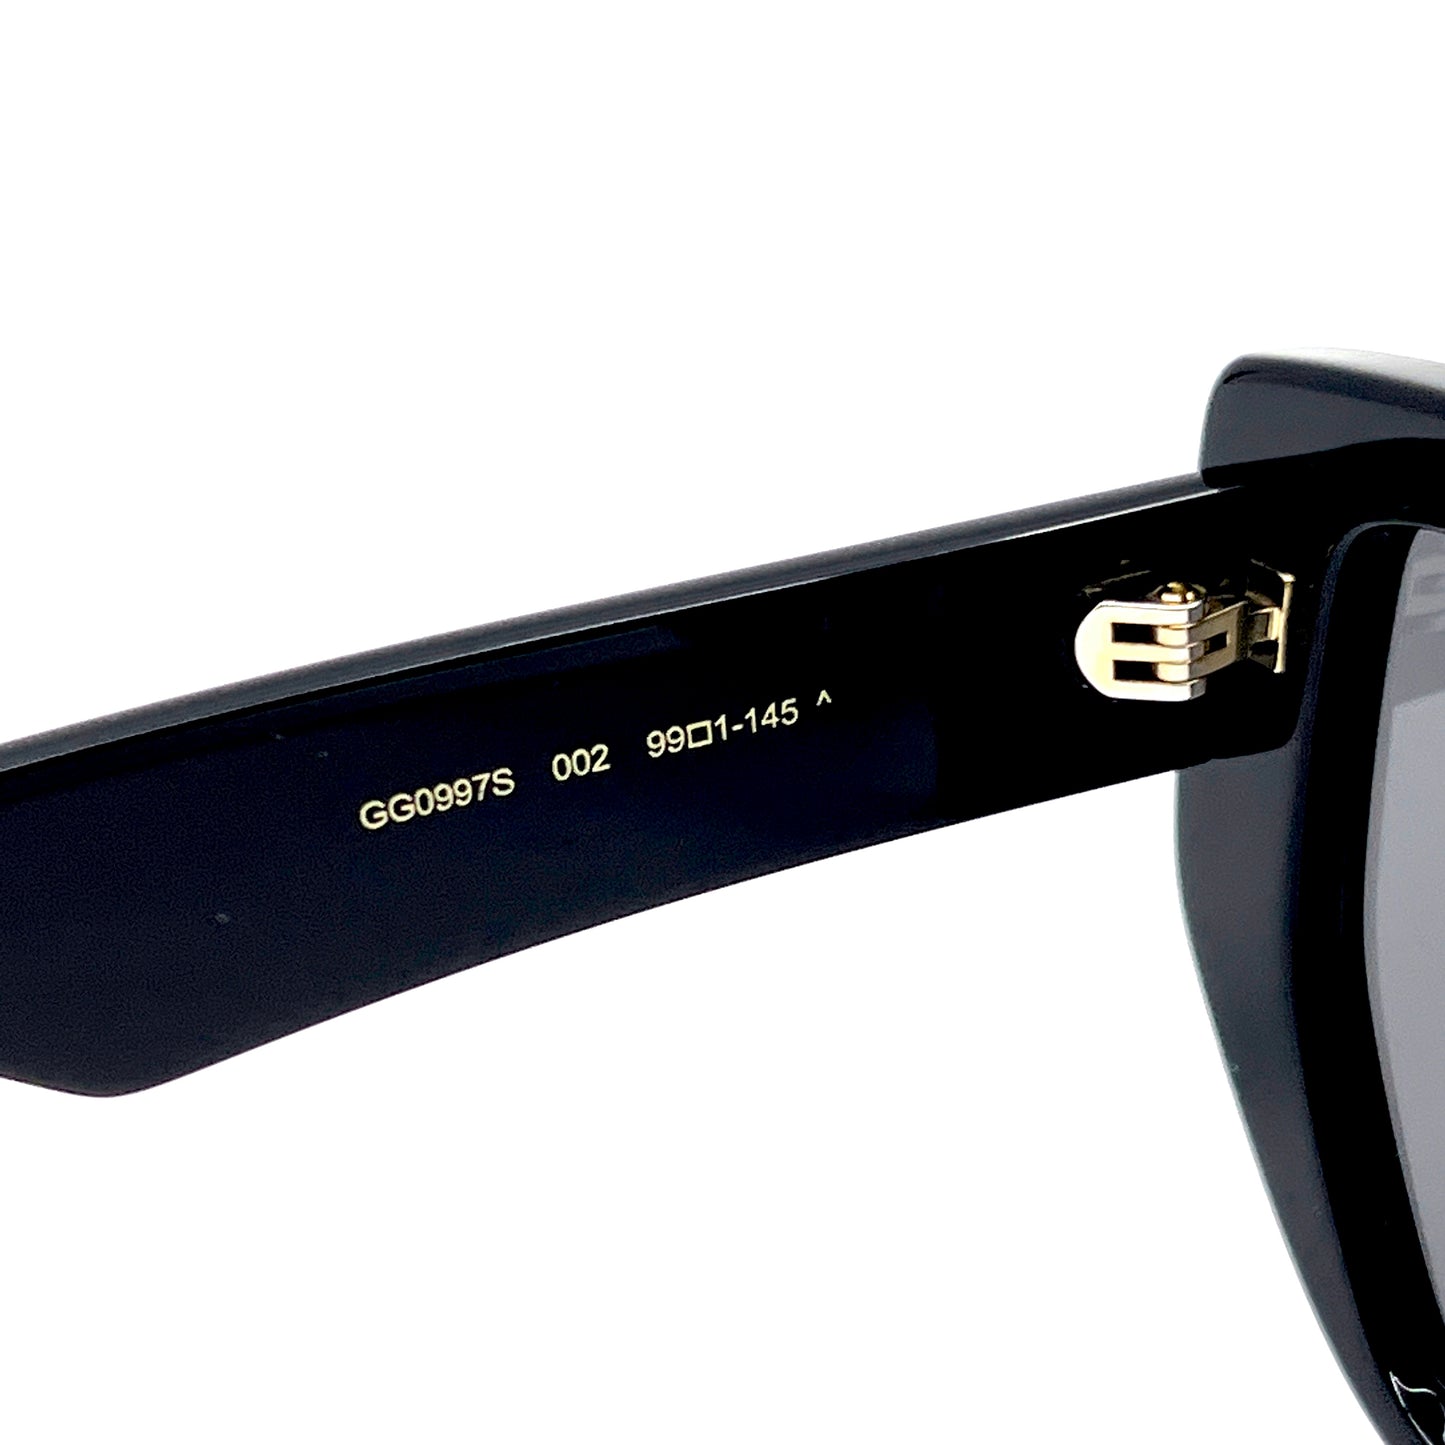 GUCCI Sunglasses GG0997S 002